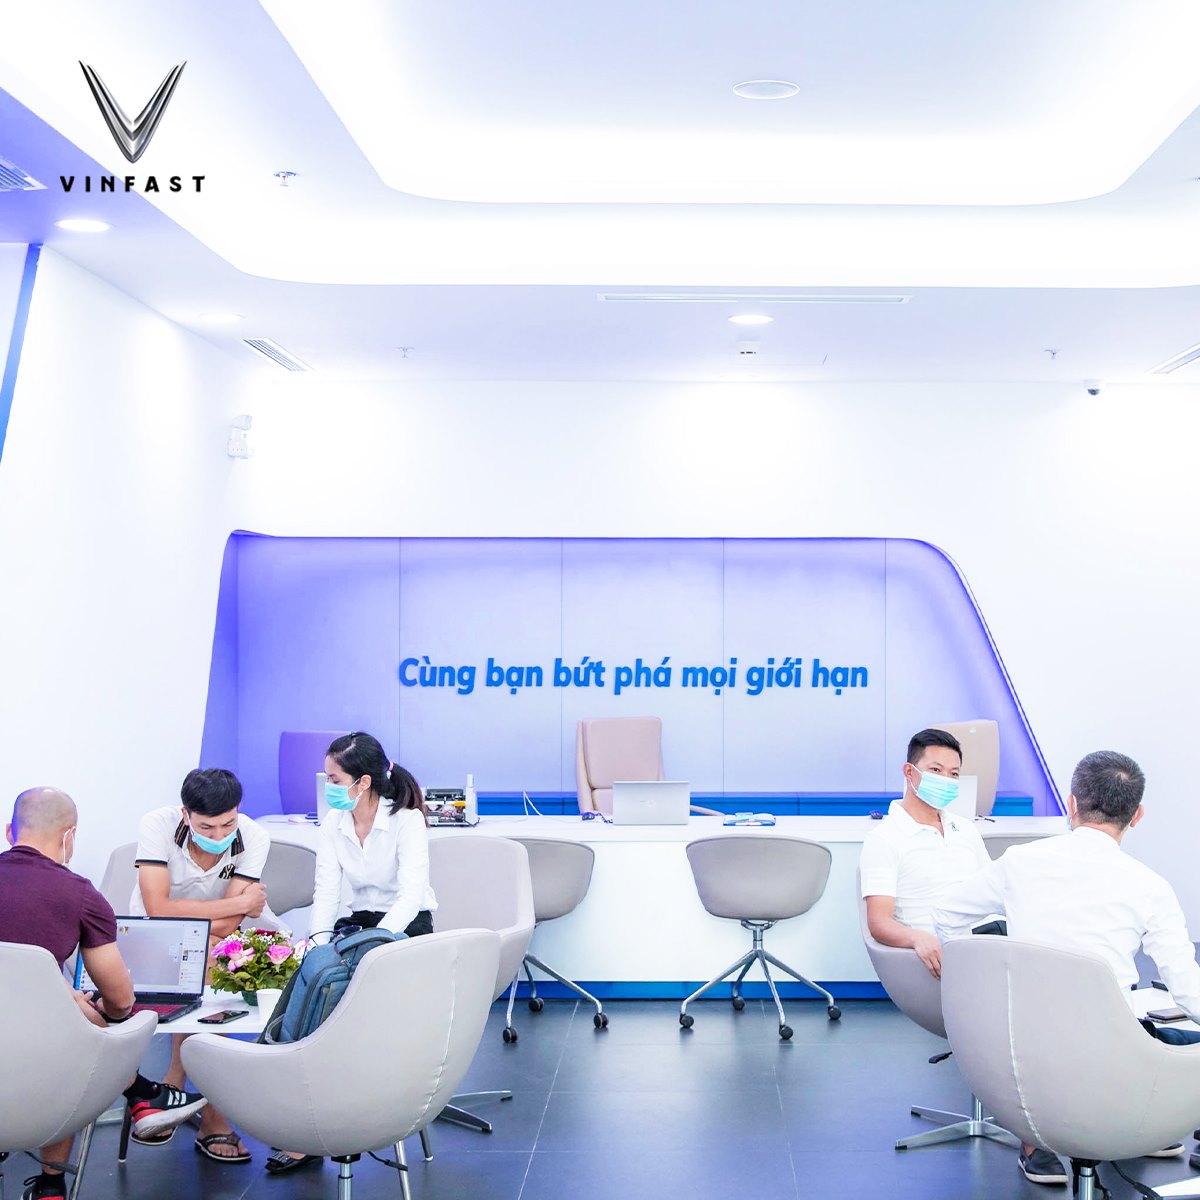 Đại lý VinFast Hạ Long Quảng Ninh - Chúng tôi tự hào là đại lý VinFast uy tín và chuyên nghiệp tại Hạ Long Quảng Ninh, với đầy đủ các mẫu xe mới nhất và dịch vụ hỗ trợ tận tình và chu đáo. Hãy xem hình ảnh để tìm hiểu thêm về sản phẩm của VinFast, cách thức mua xe và những ưu đãi đang chờ đón.